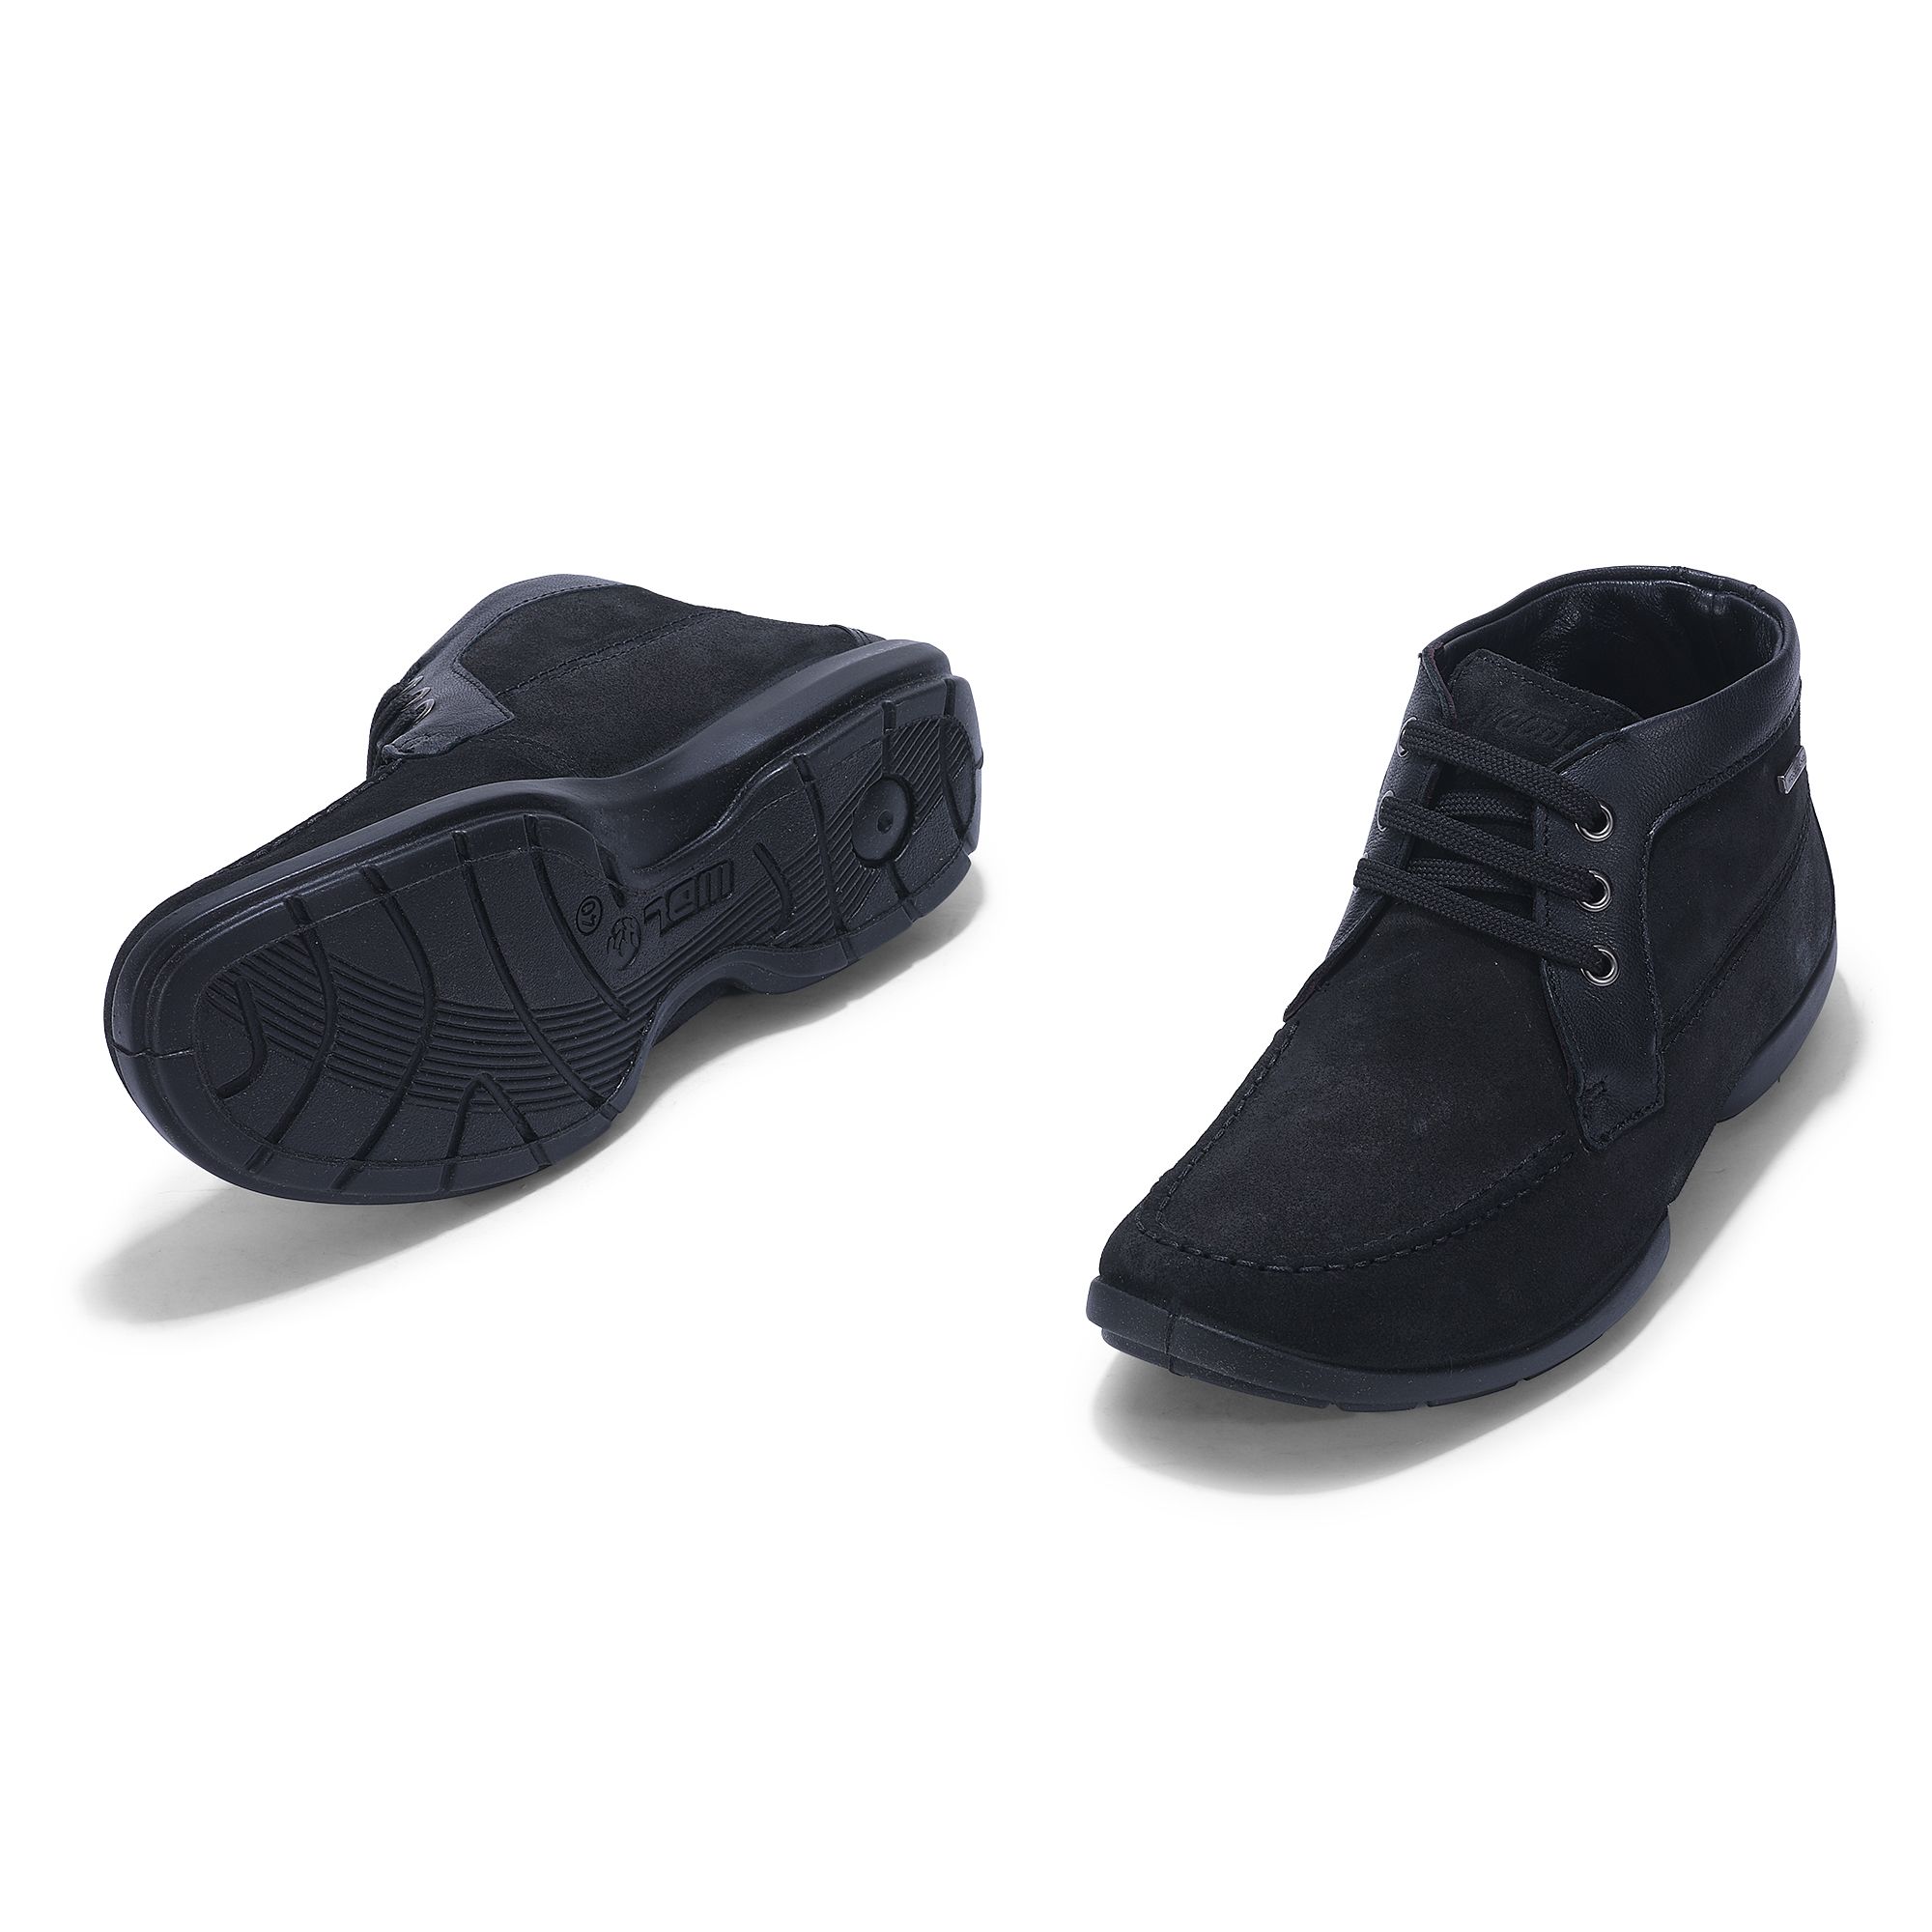 Woodland Black chukka Shoes